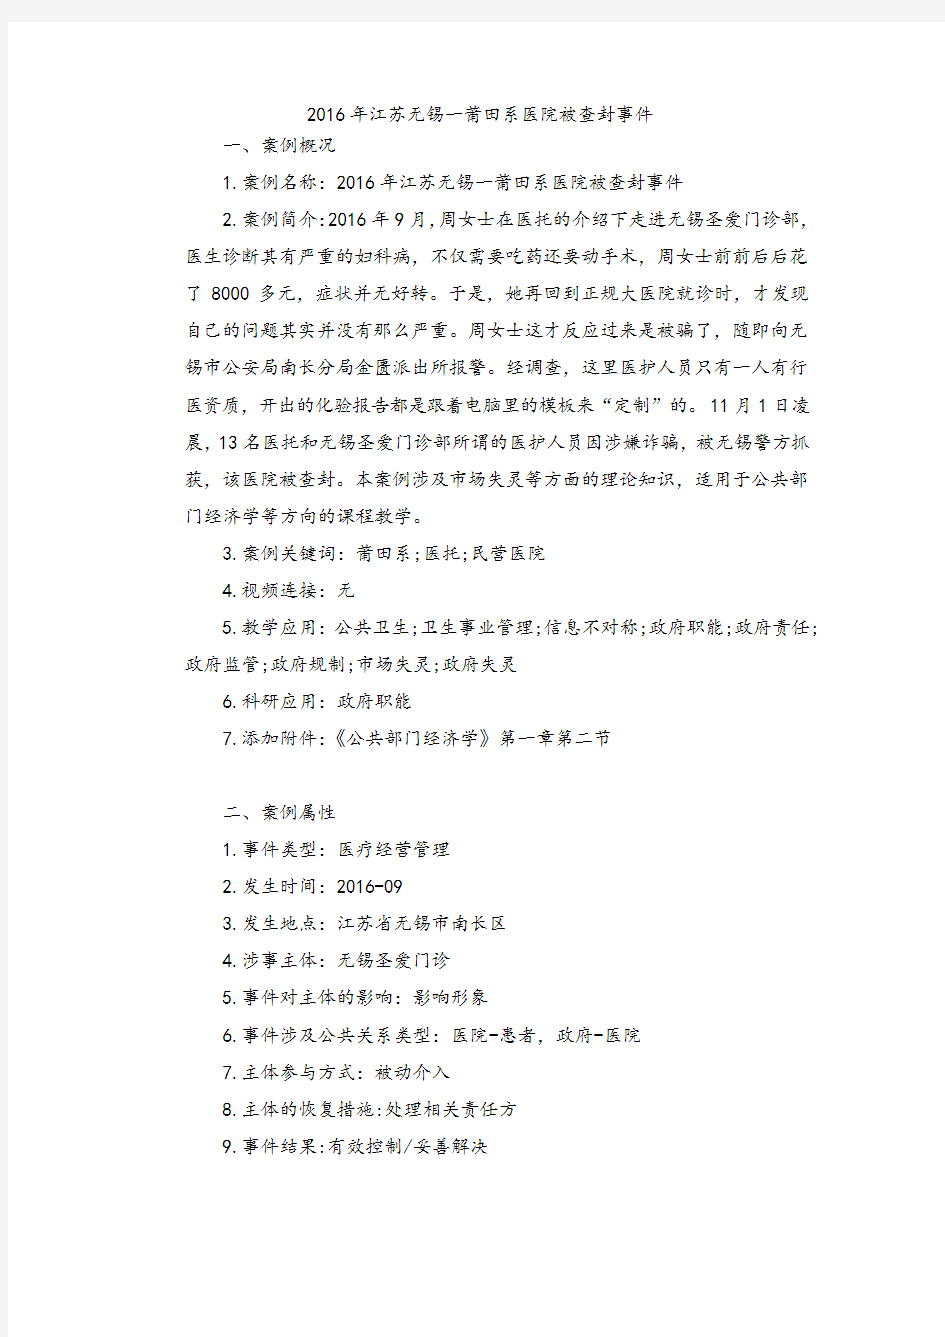 中国网络危机案例结构化指引-公共管理案例库